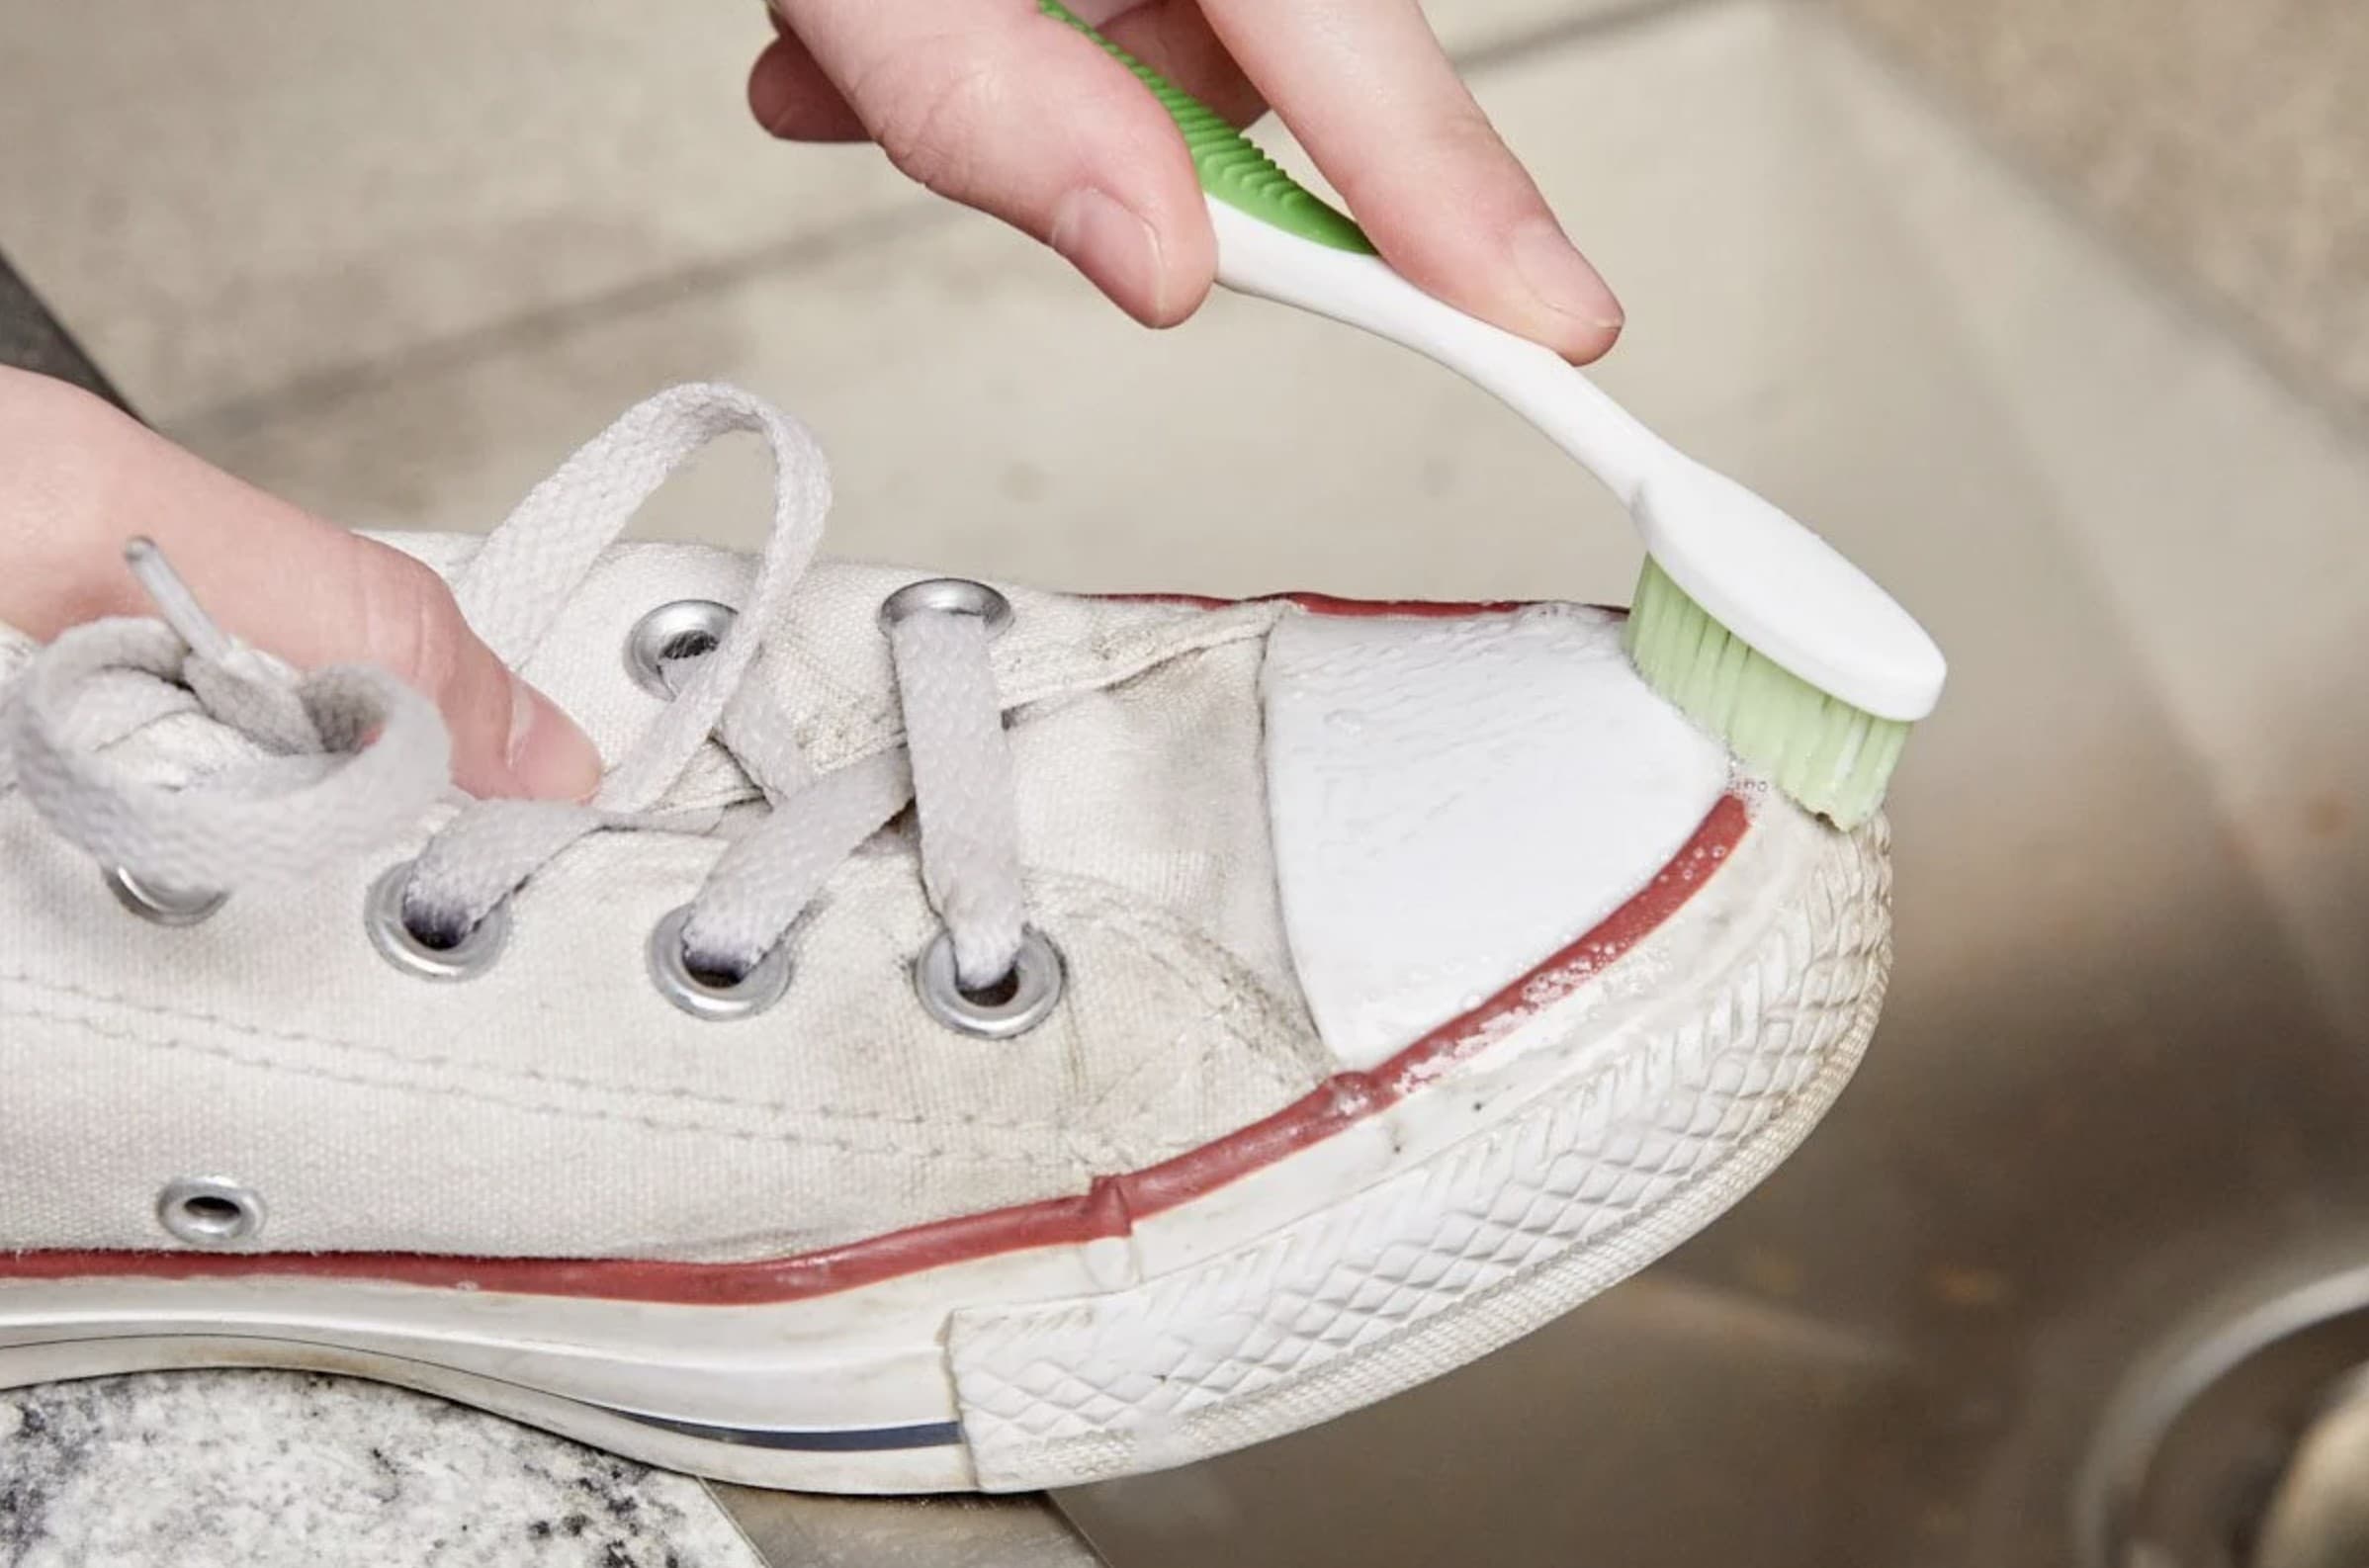 Можно ли постирать кроссовки. Кеды в клею. Зубная паста для кроссовок. Протирает белую кеды салфеткой. Очистить белую обувь зубной пастой.